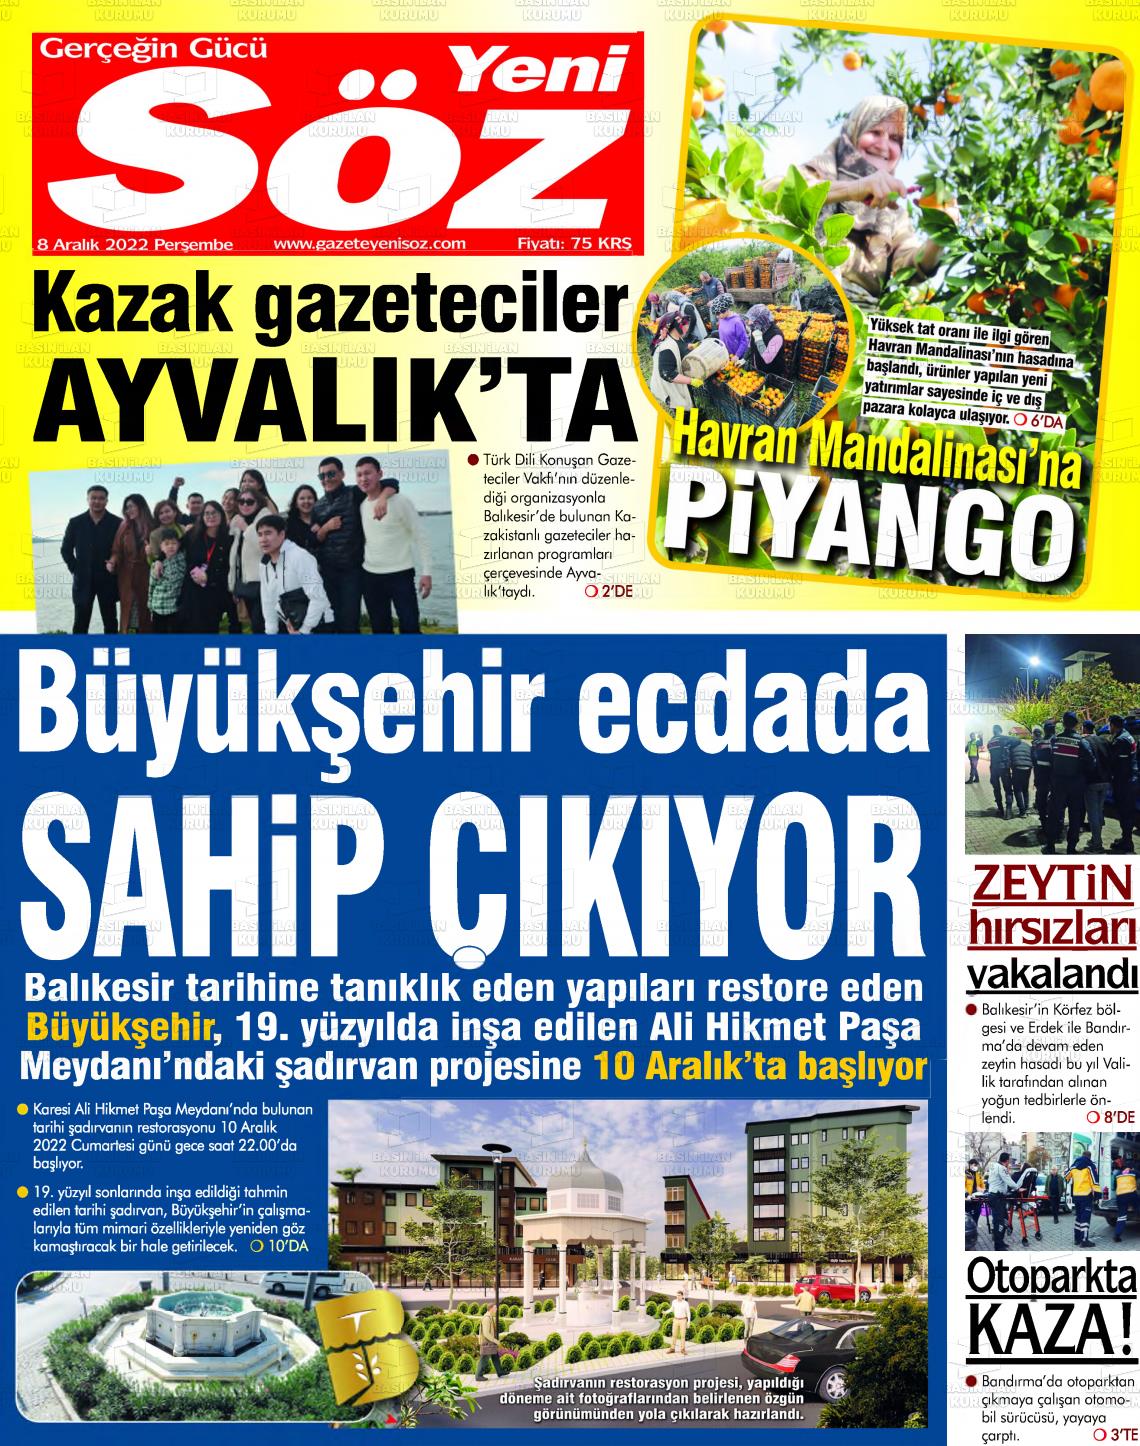 08 Aralık 2022 Yeni Söz Gazete Manşeti